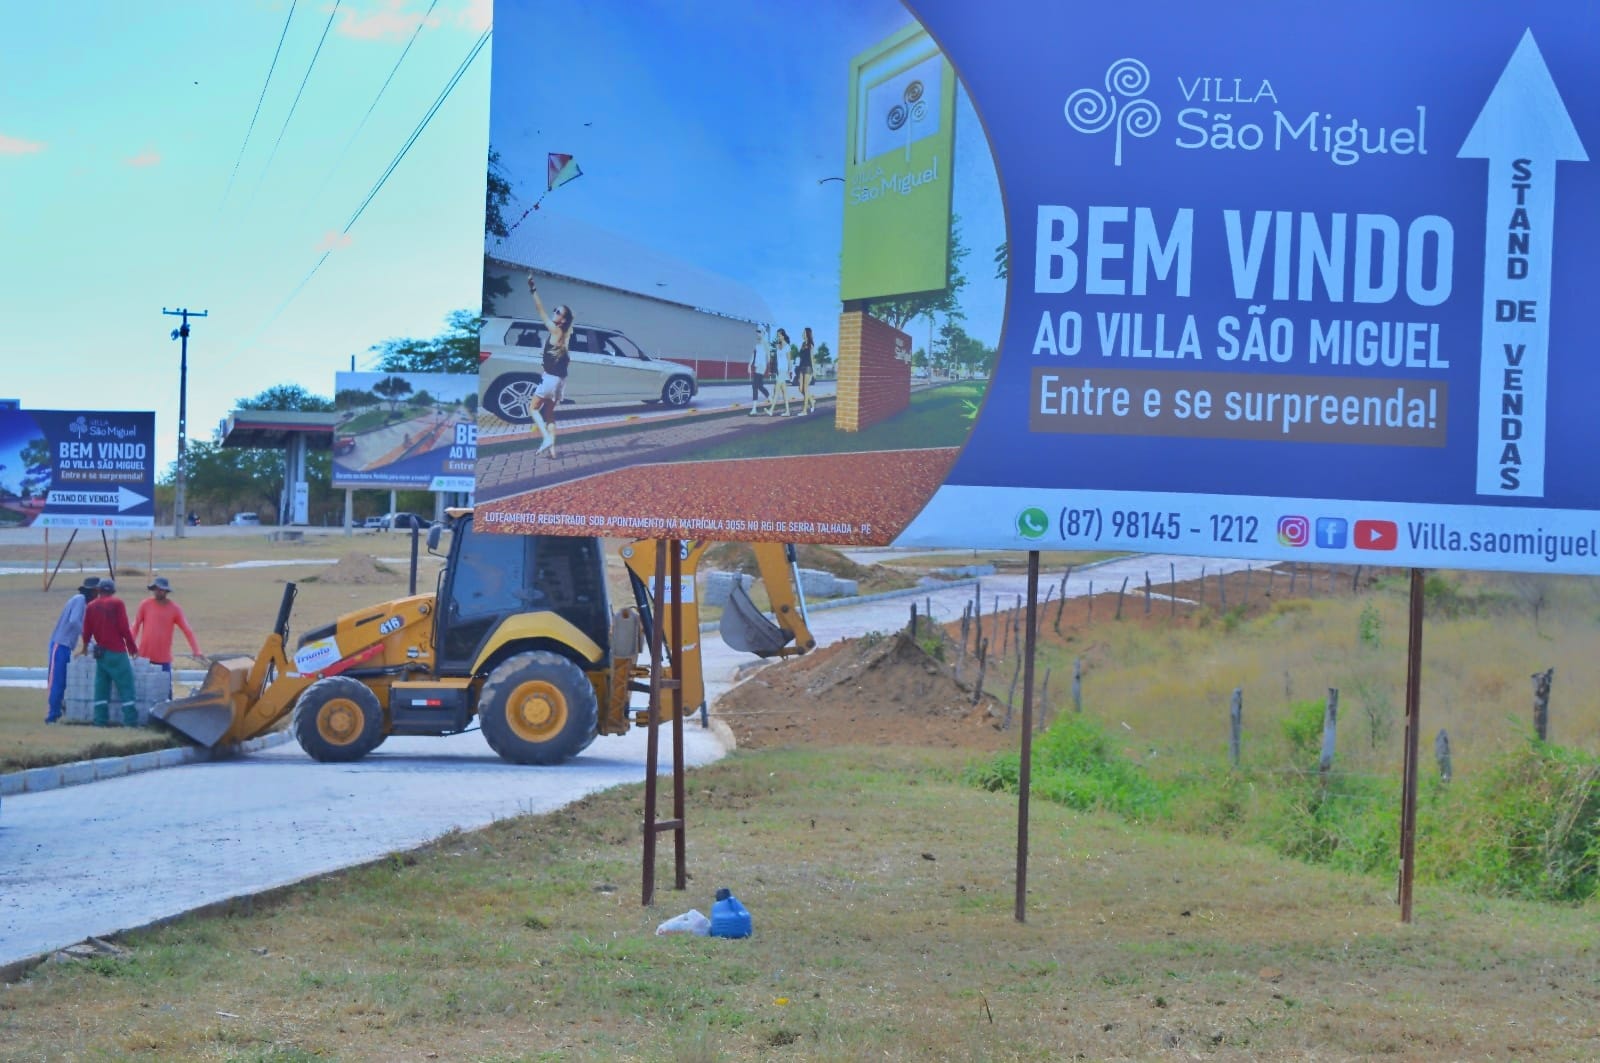 Villa São Miguel e Premocil lançam produto inovador em ST